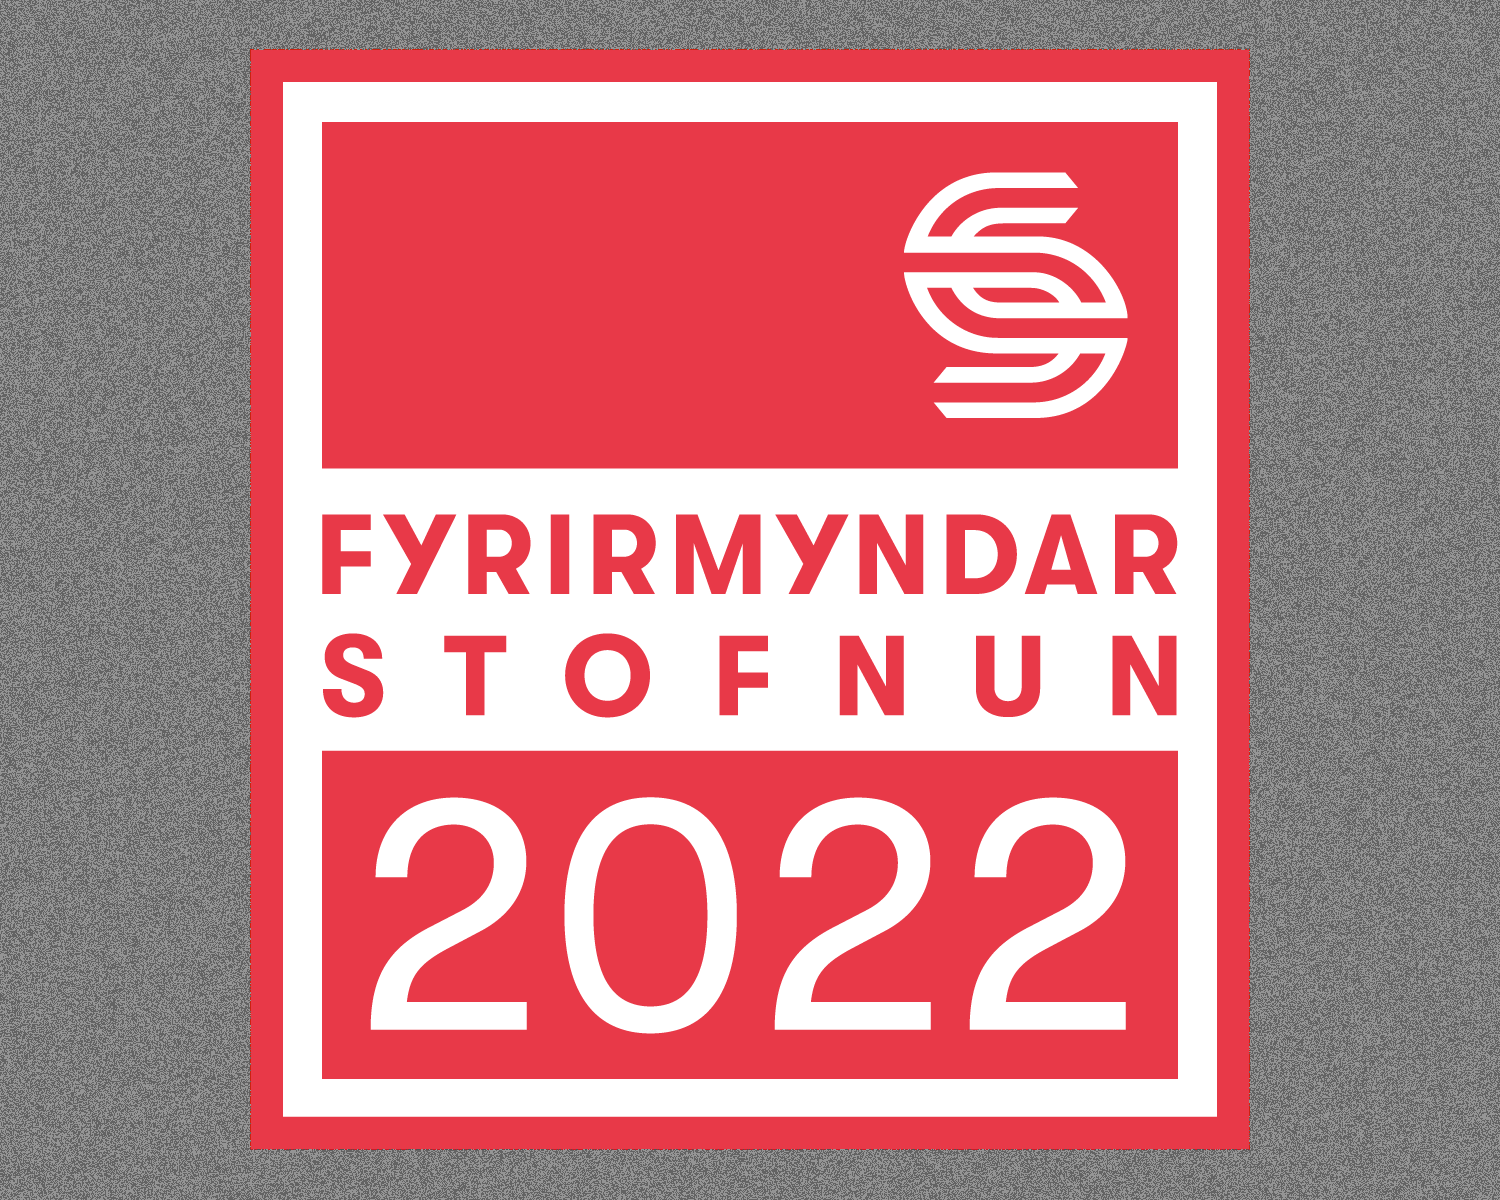 Vínbúðirnar fyrirmyndarstofnun 2022